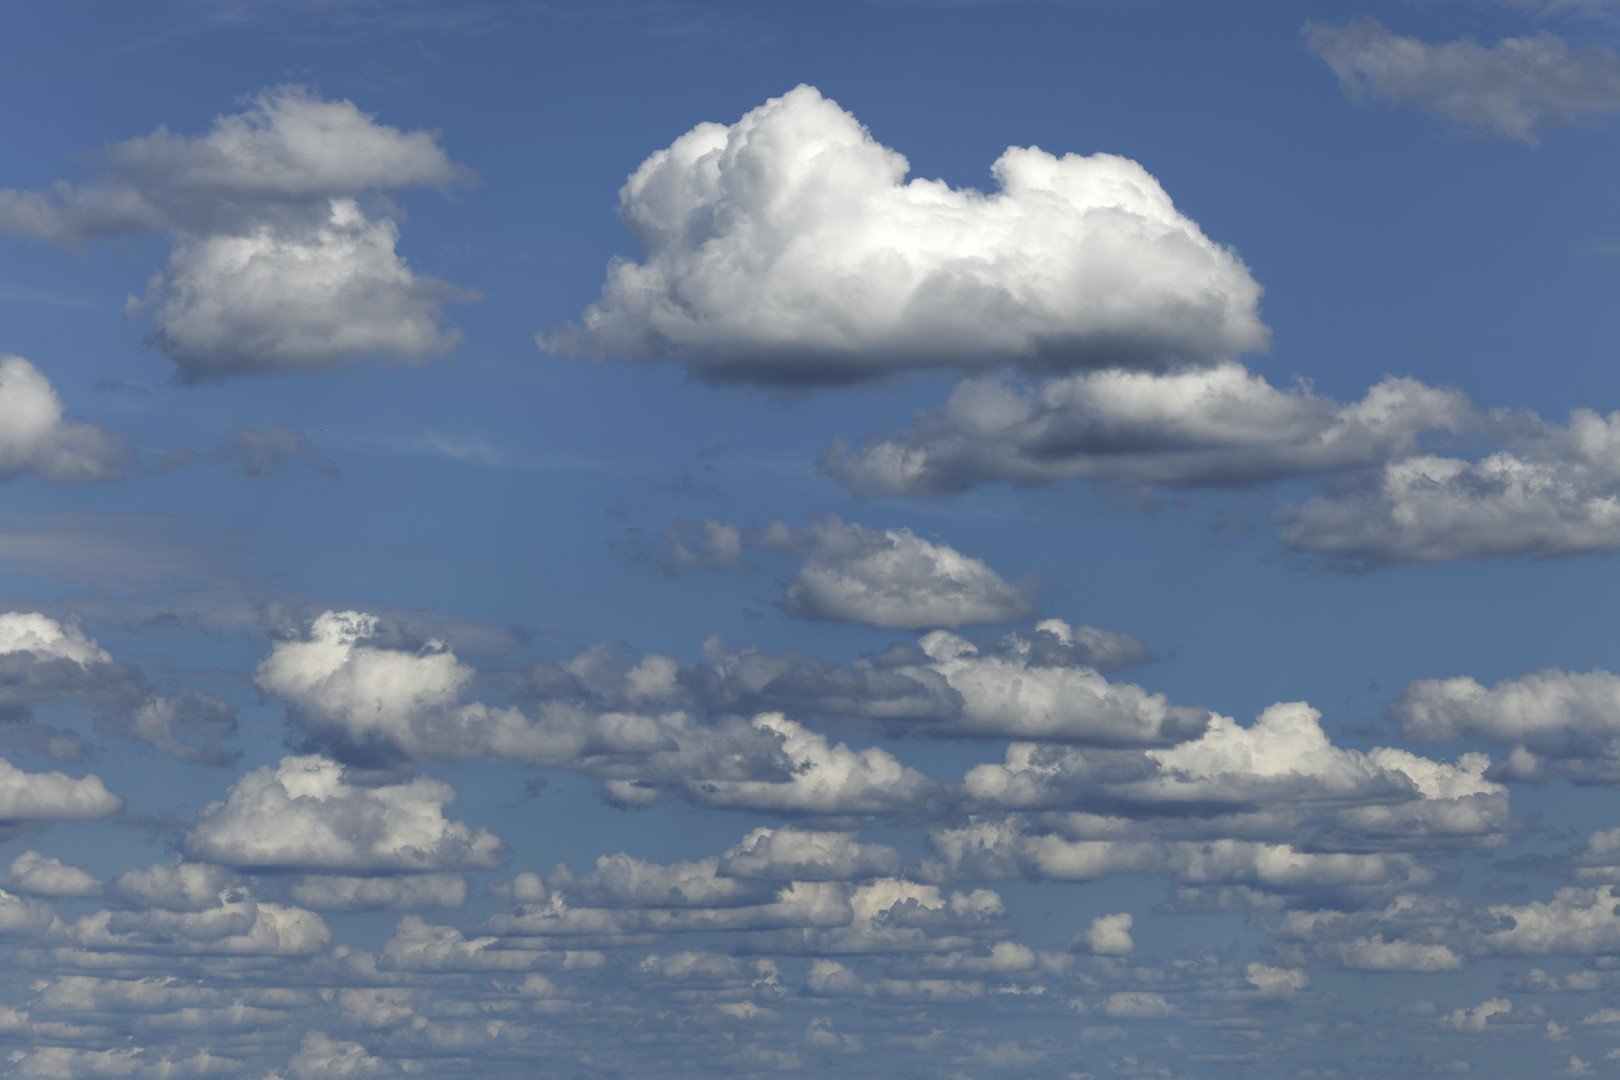 كيف يمكن التنبؤ بالطقس باستخدام الغيوم؟